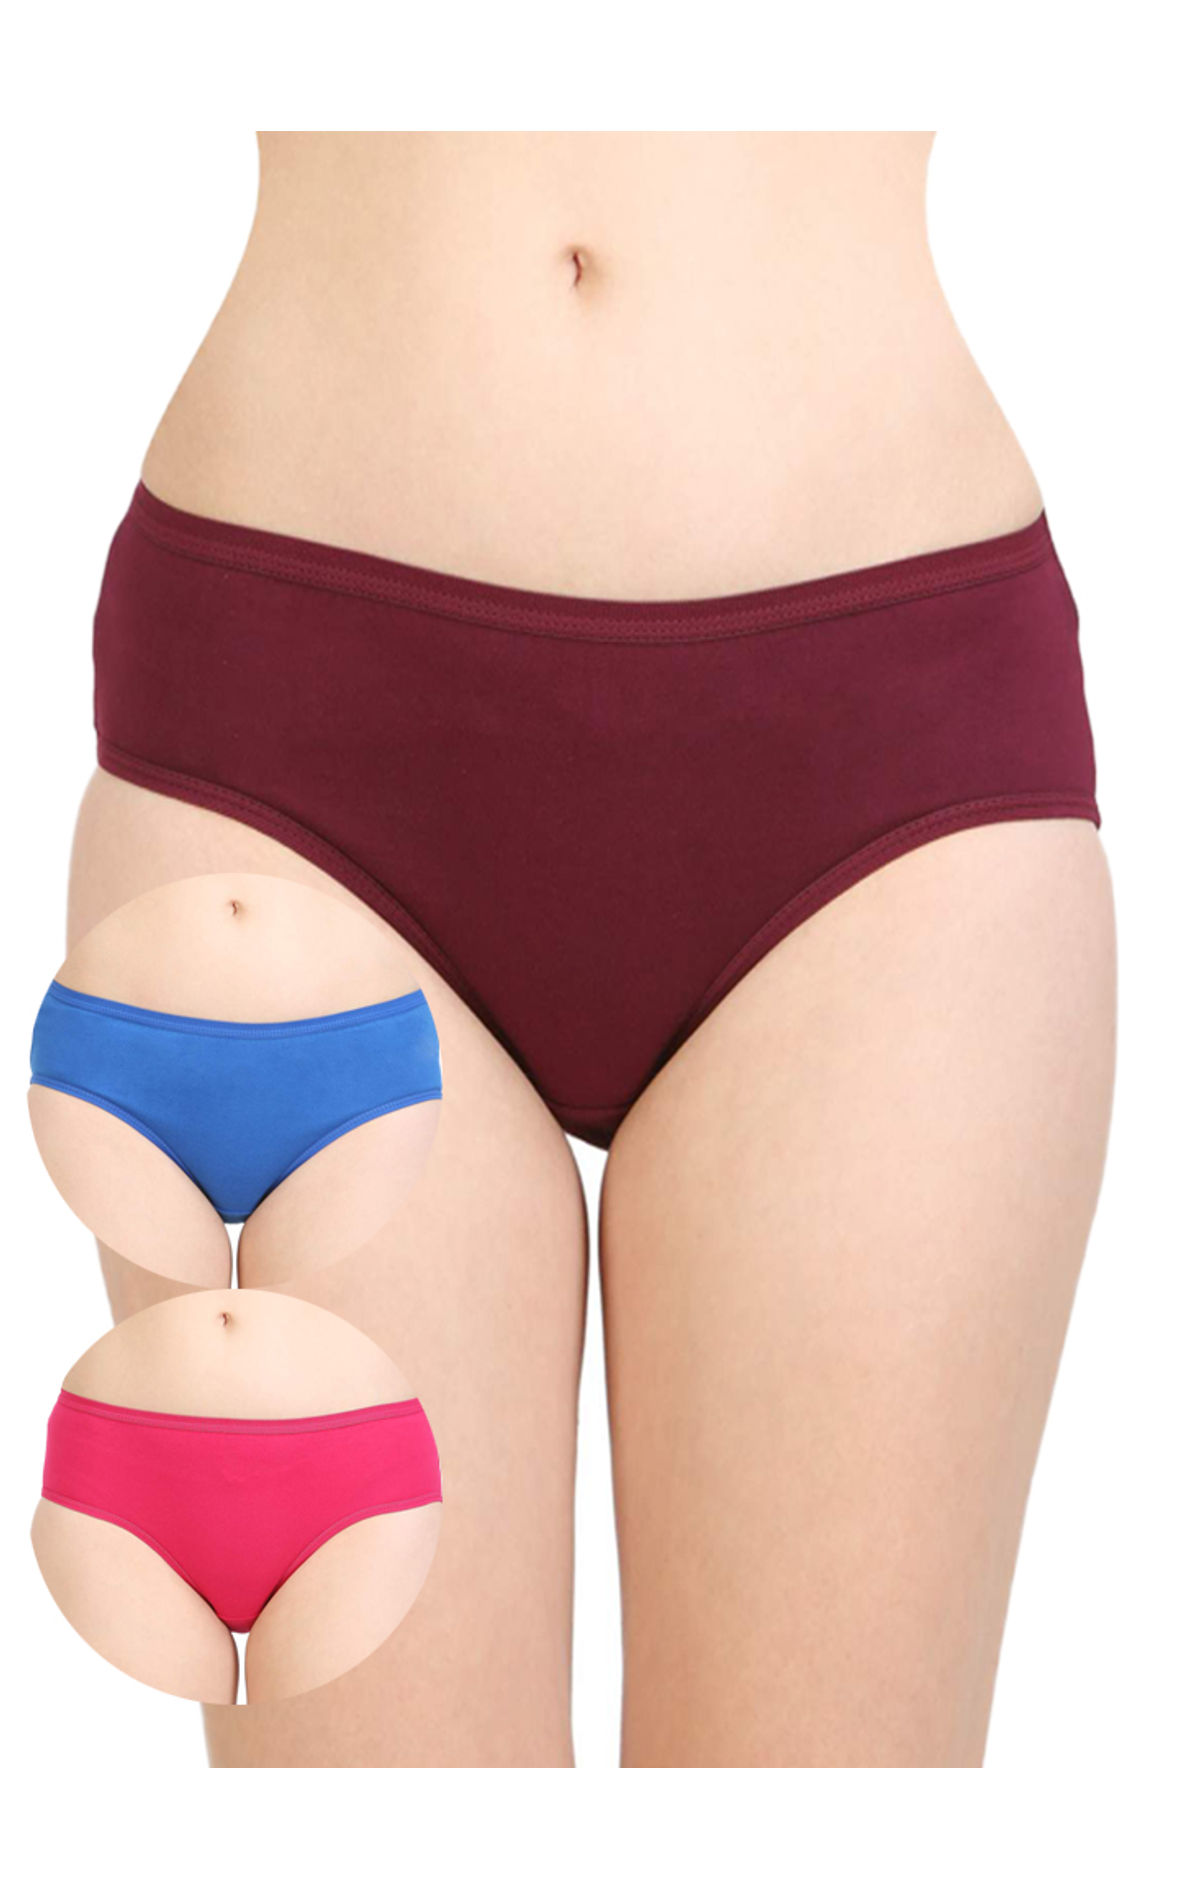 Bodycare Women's Plain Inner Elastic Panty – Online Shopping site